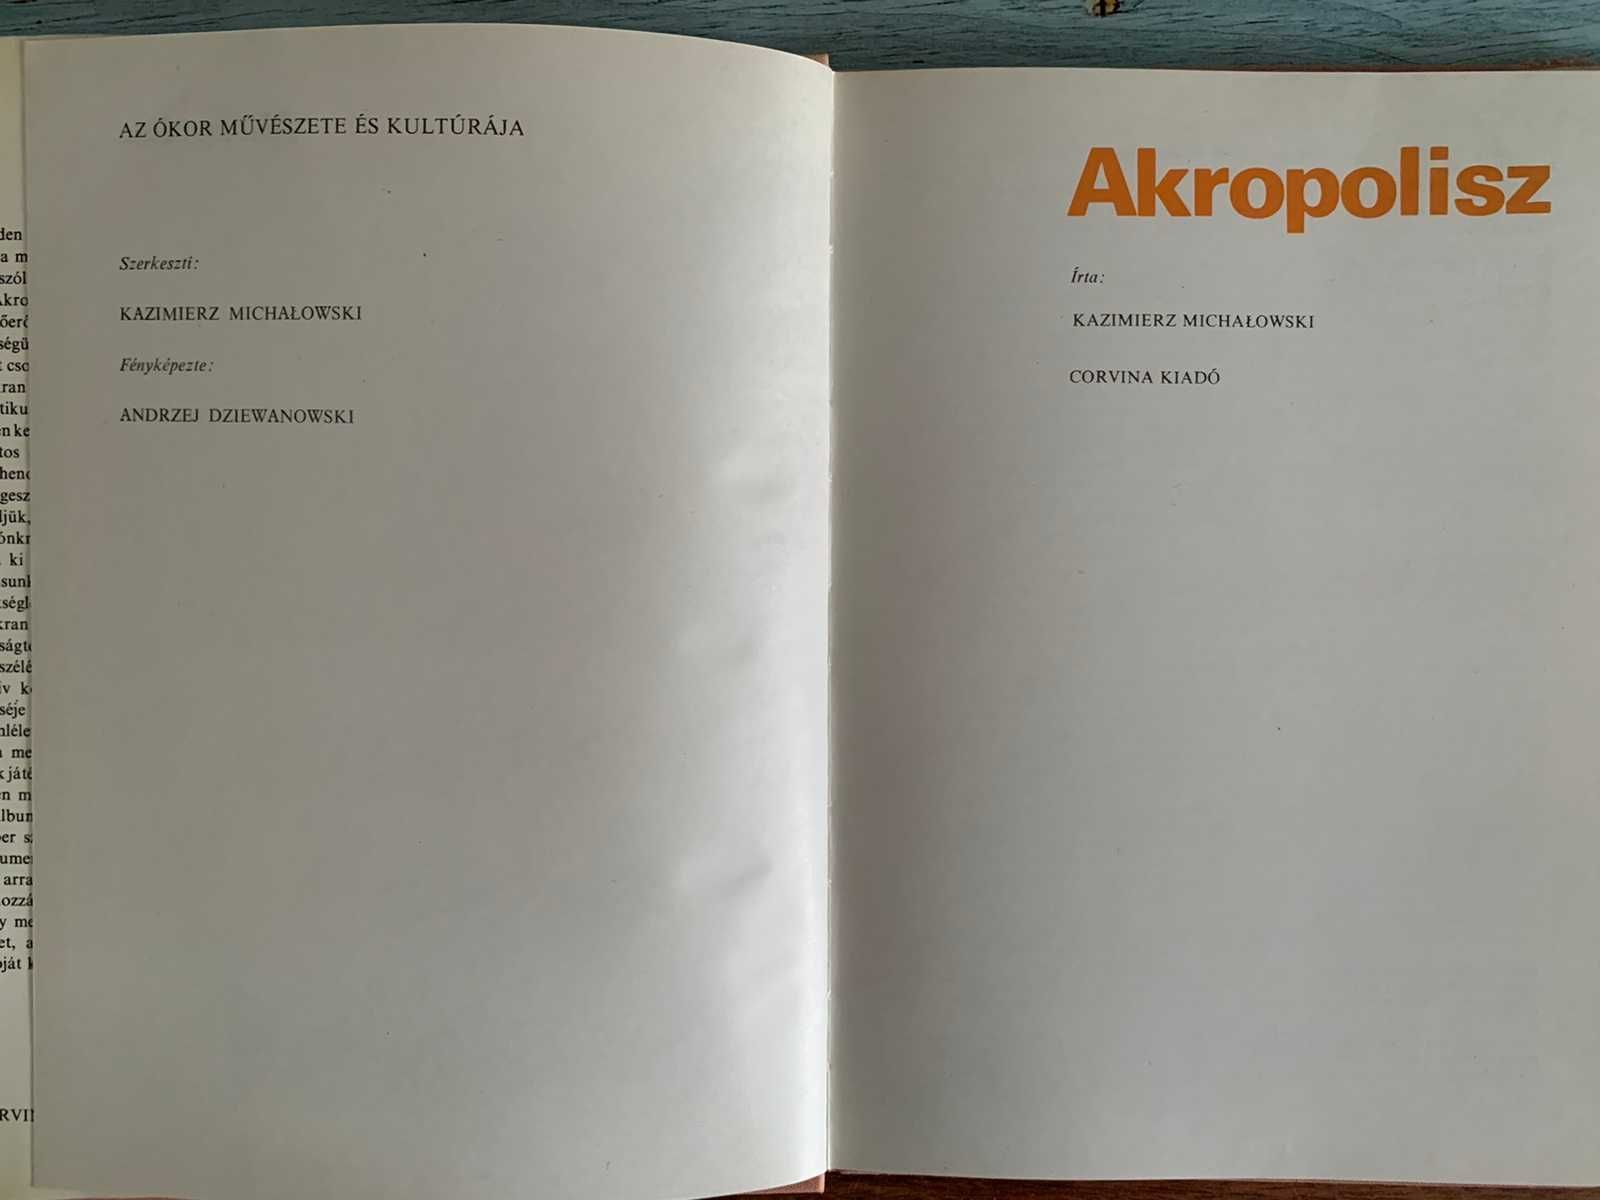 Альбом Akropolisz K. Michalowski Акрополь Книги СССР радянських часів